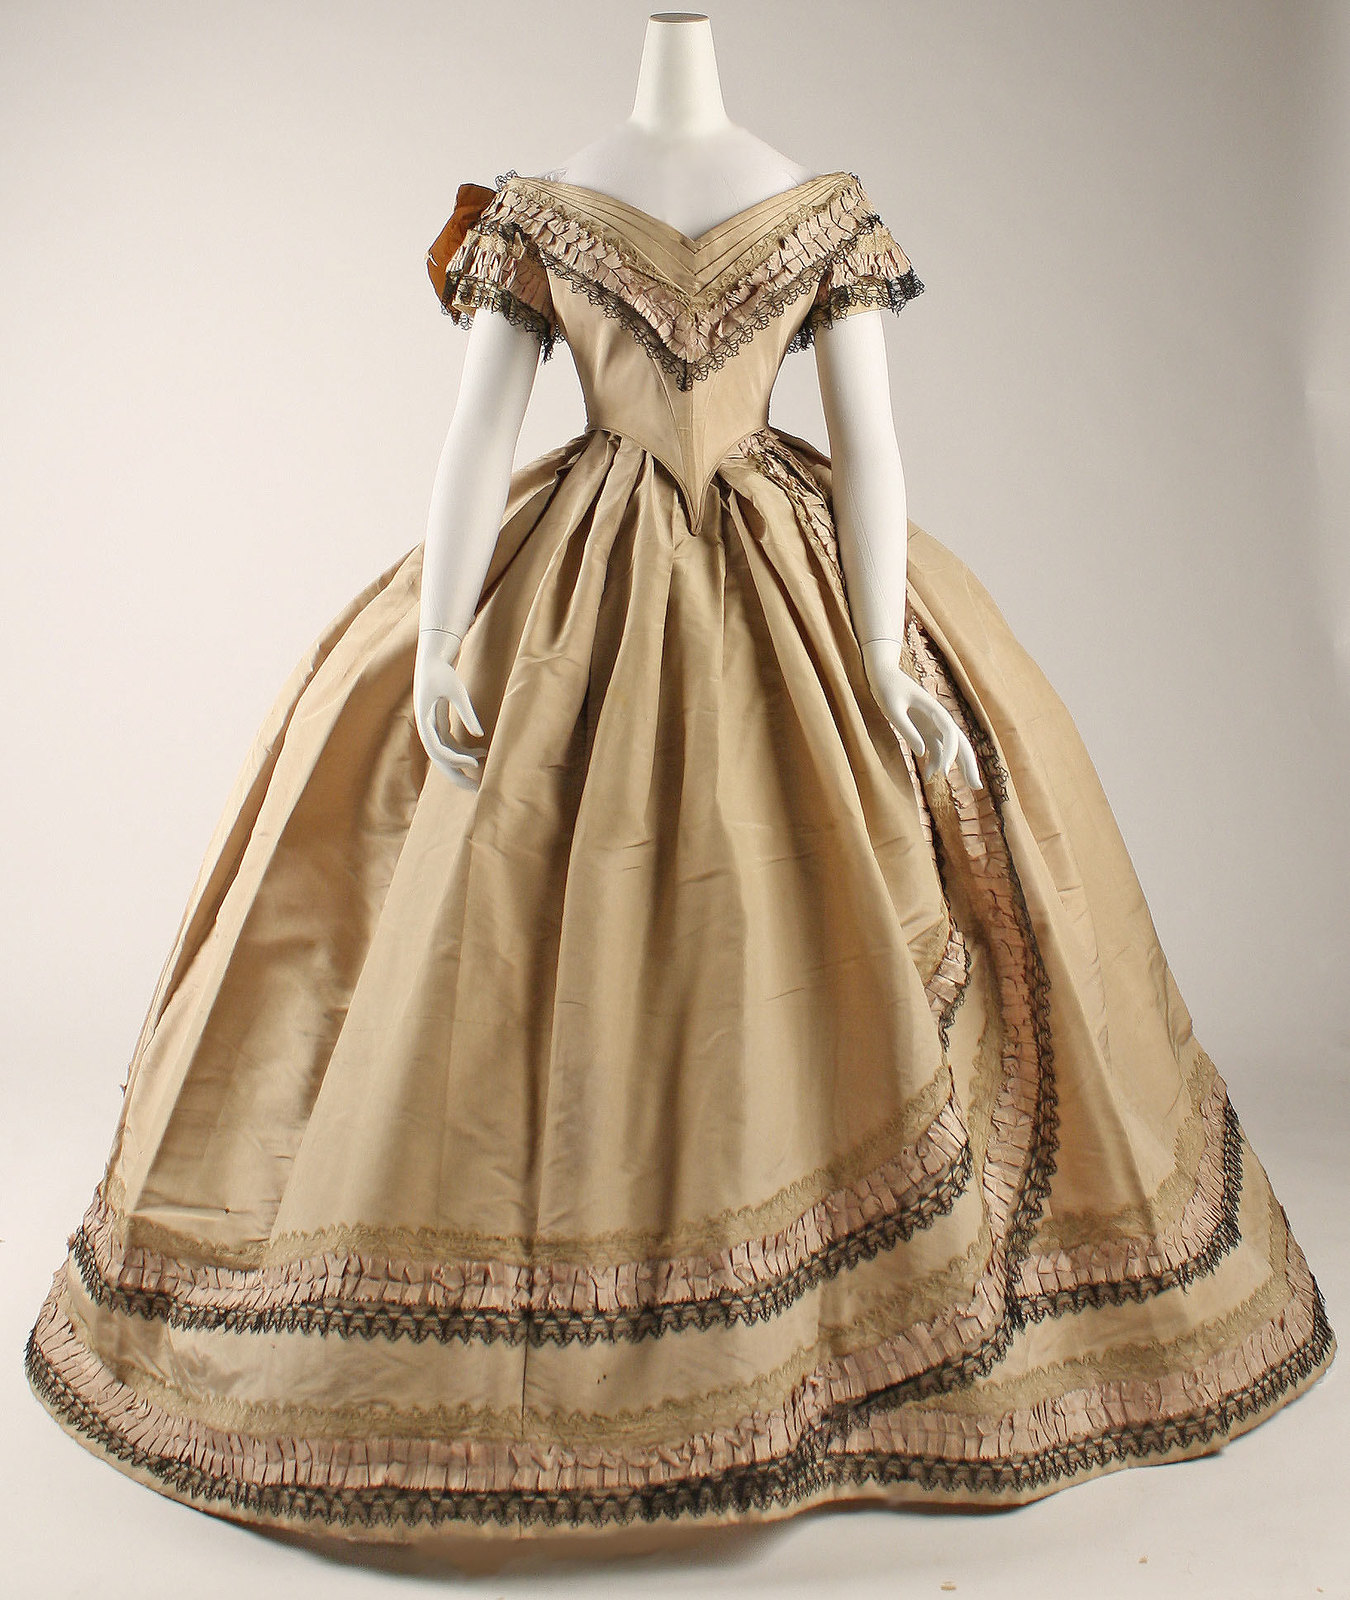 1860-64, British, silk. metmuseum